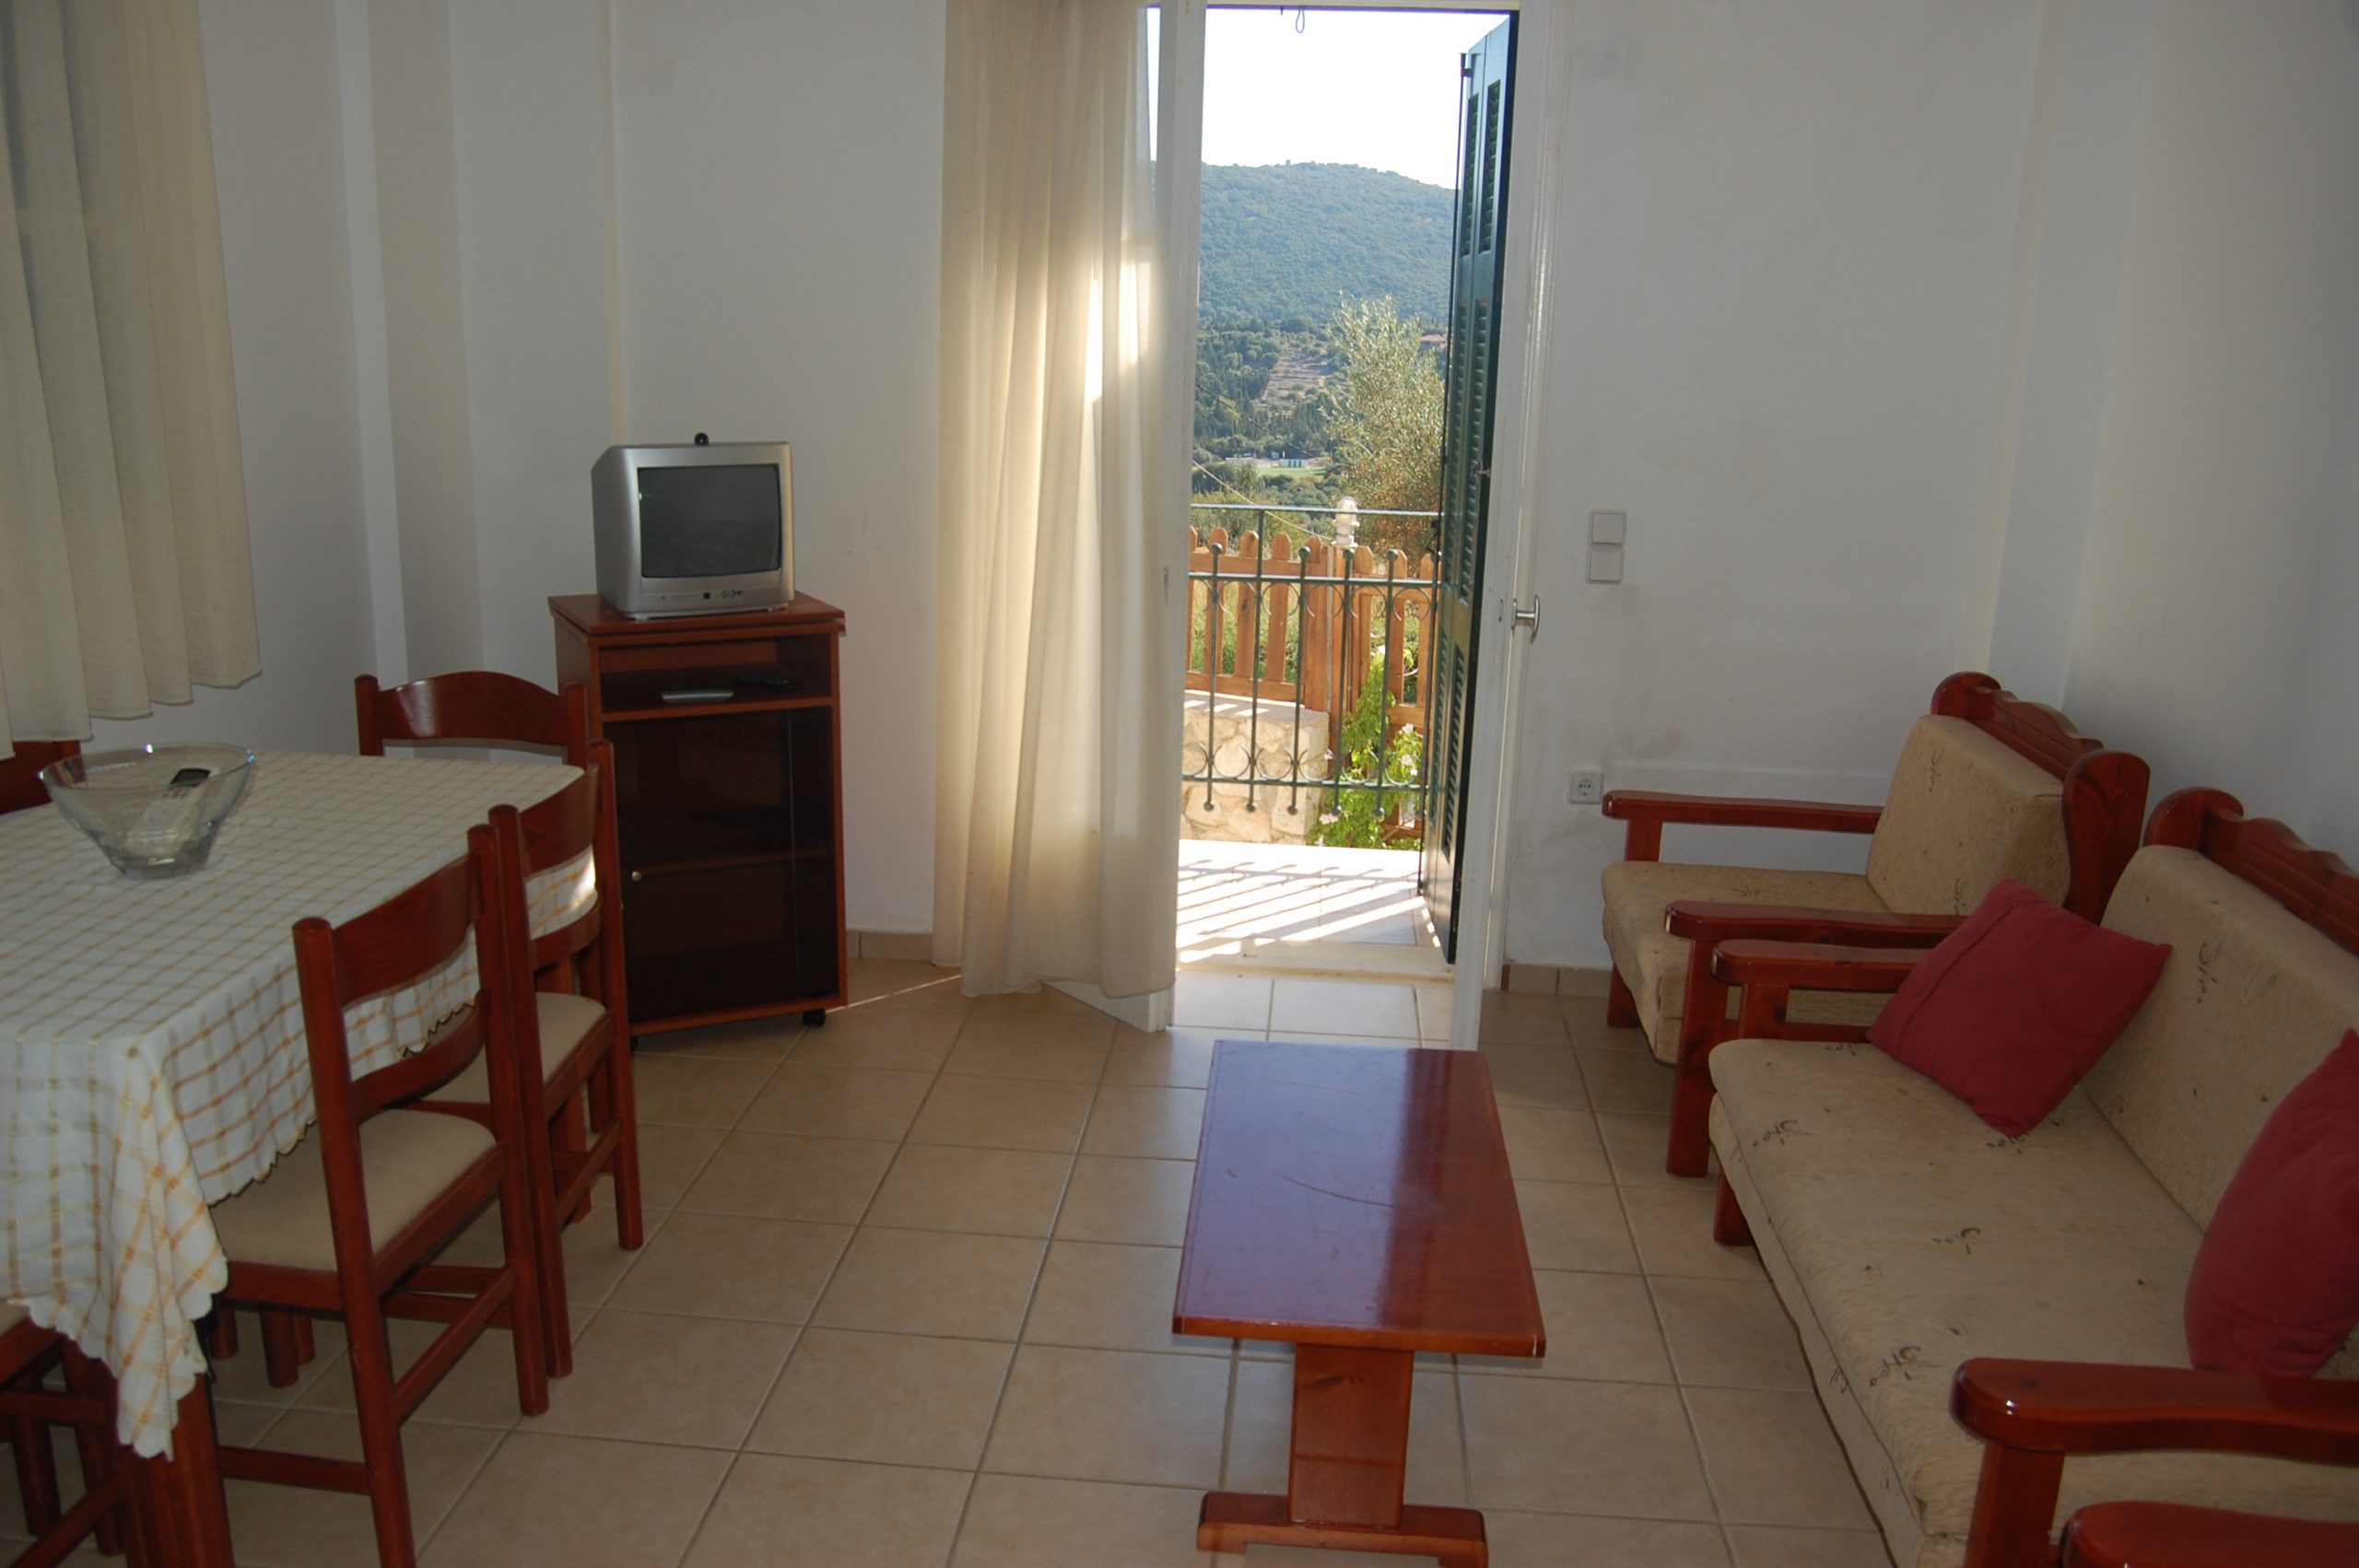 Εσωτερικό διαμέρισμα του Iriana Village προς ενοικίαση στην Ιθάκη Ελλάδα, Σταυρός